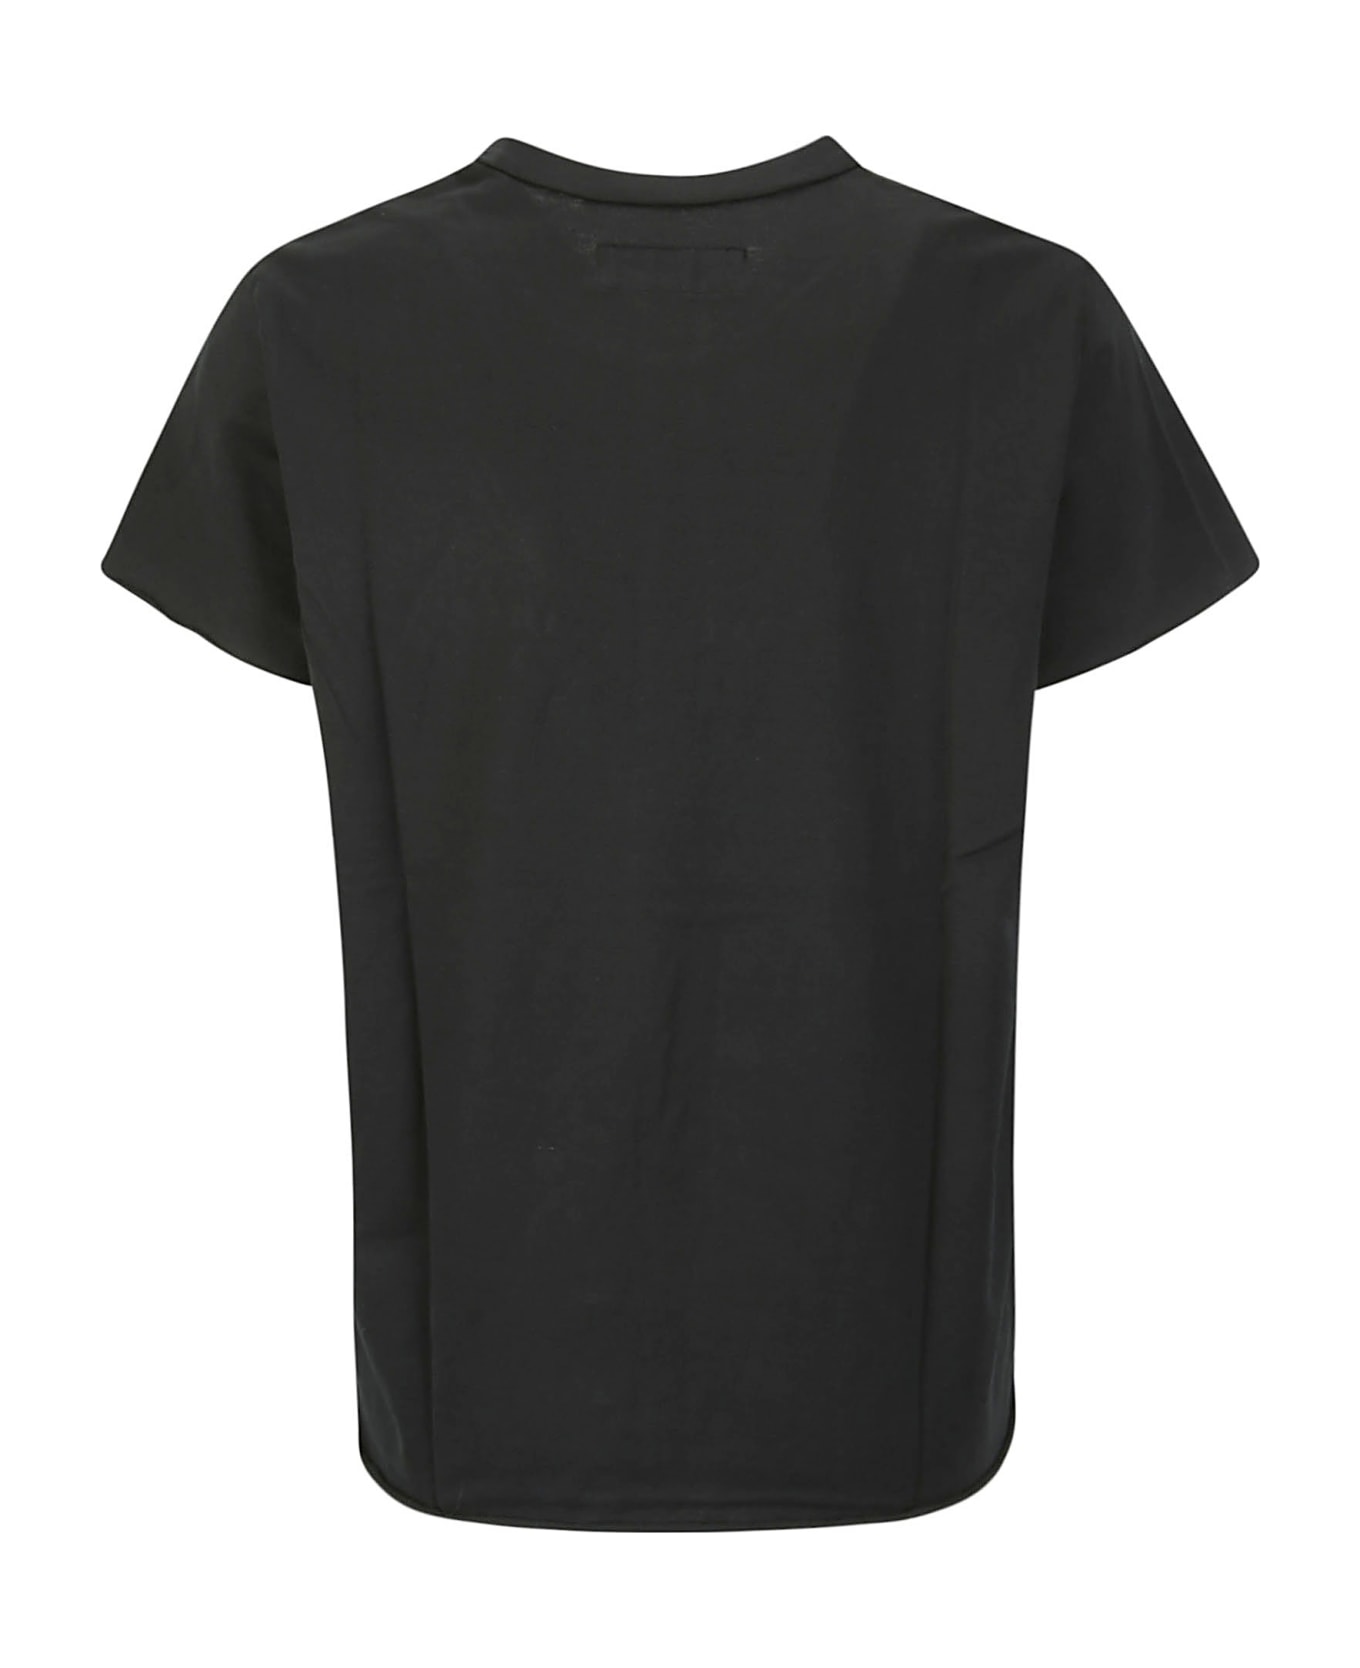 Labo.Art Maglia Rico Jersey - BLACK Tシャツ